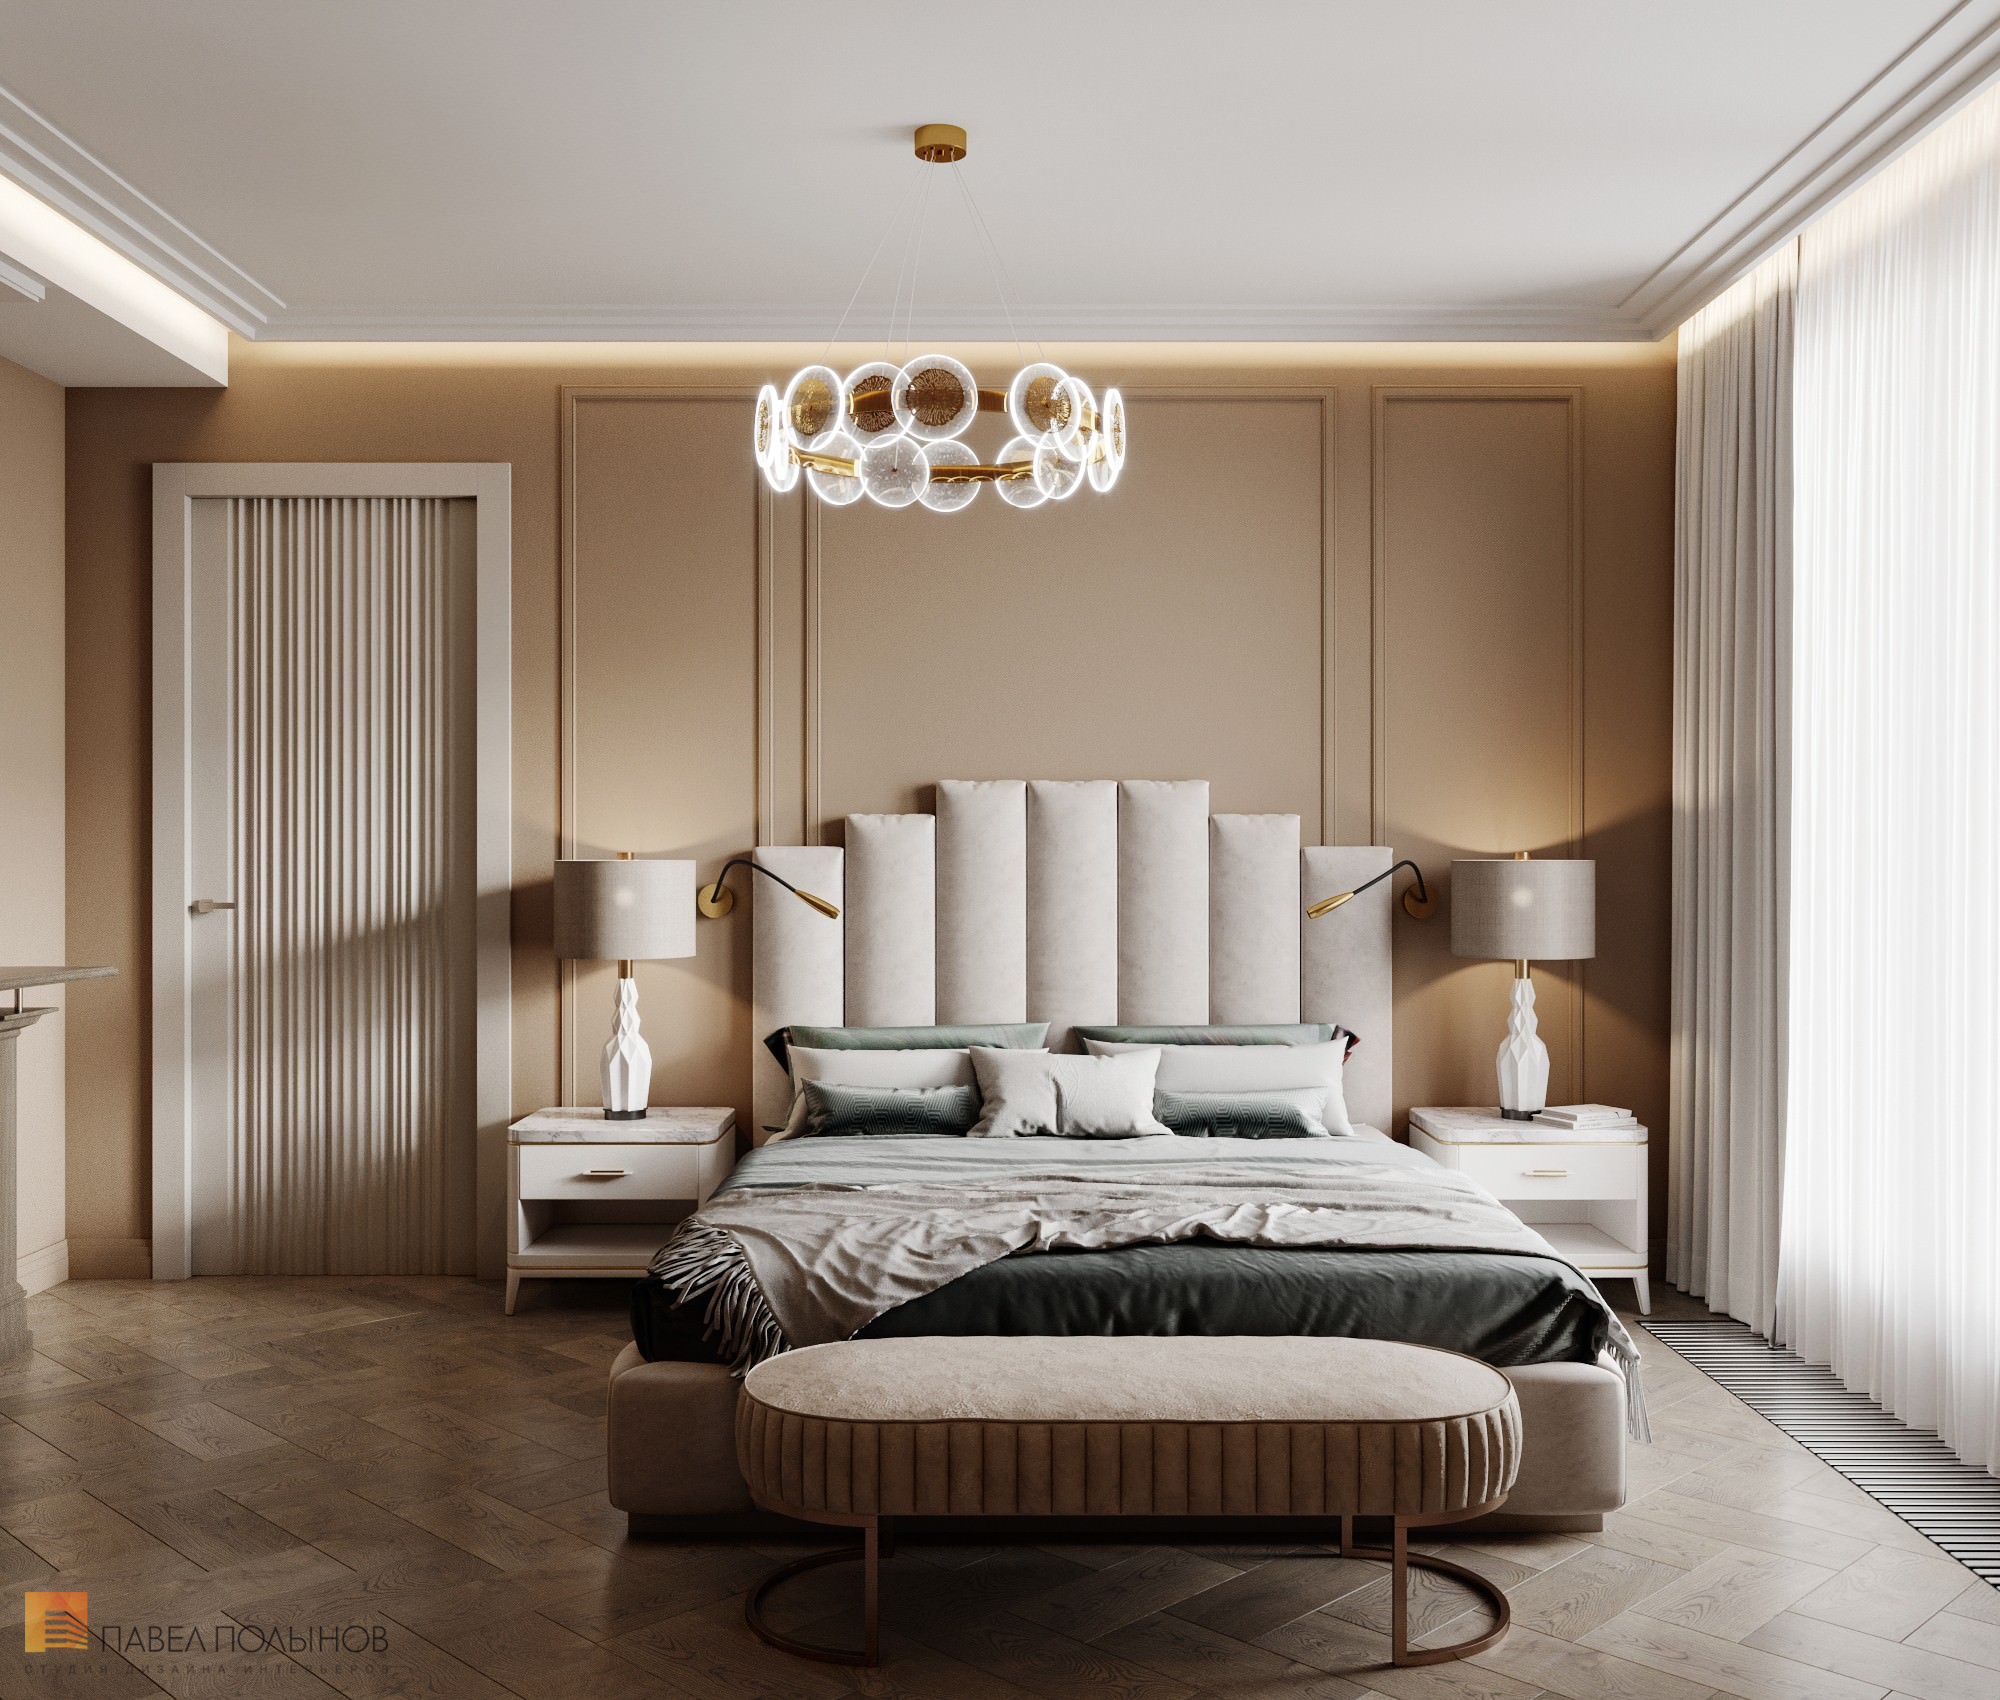 Фото дизайн спальни из проекта «Интерьер квартиры в современном стиле, 178 кв.м.»